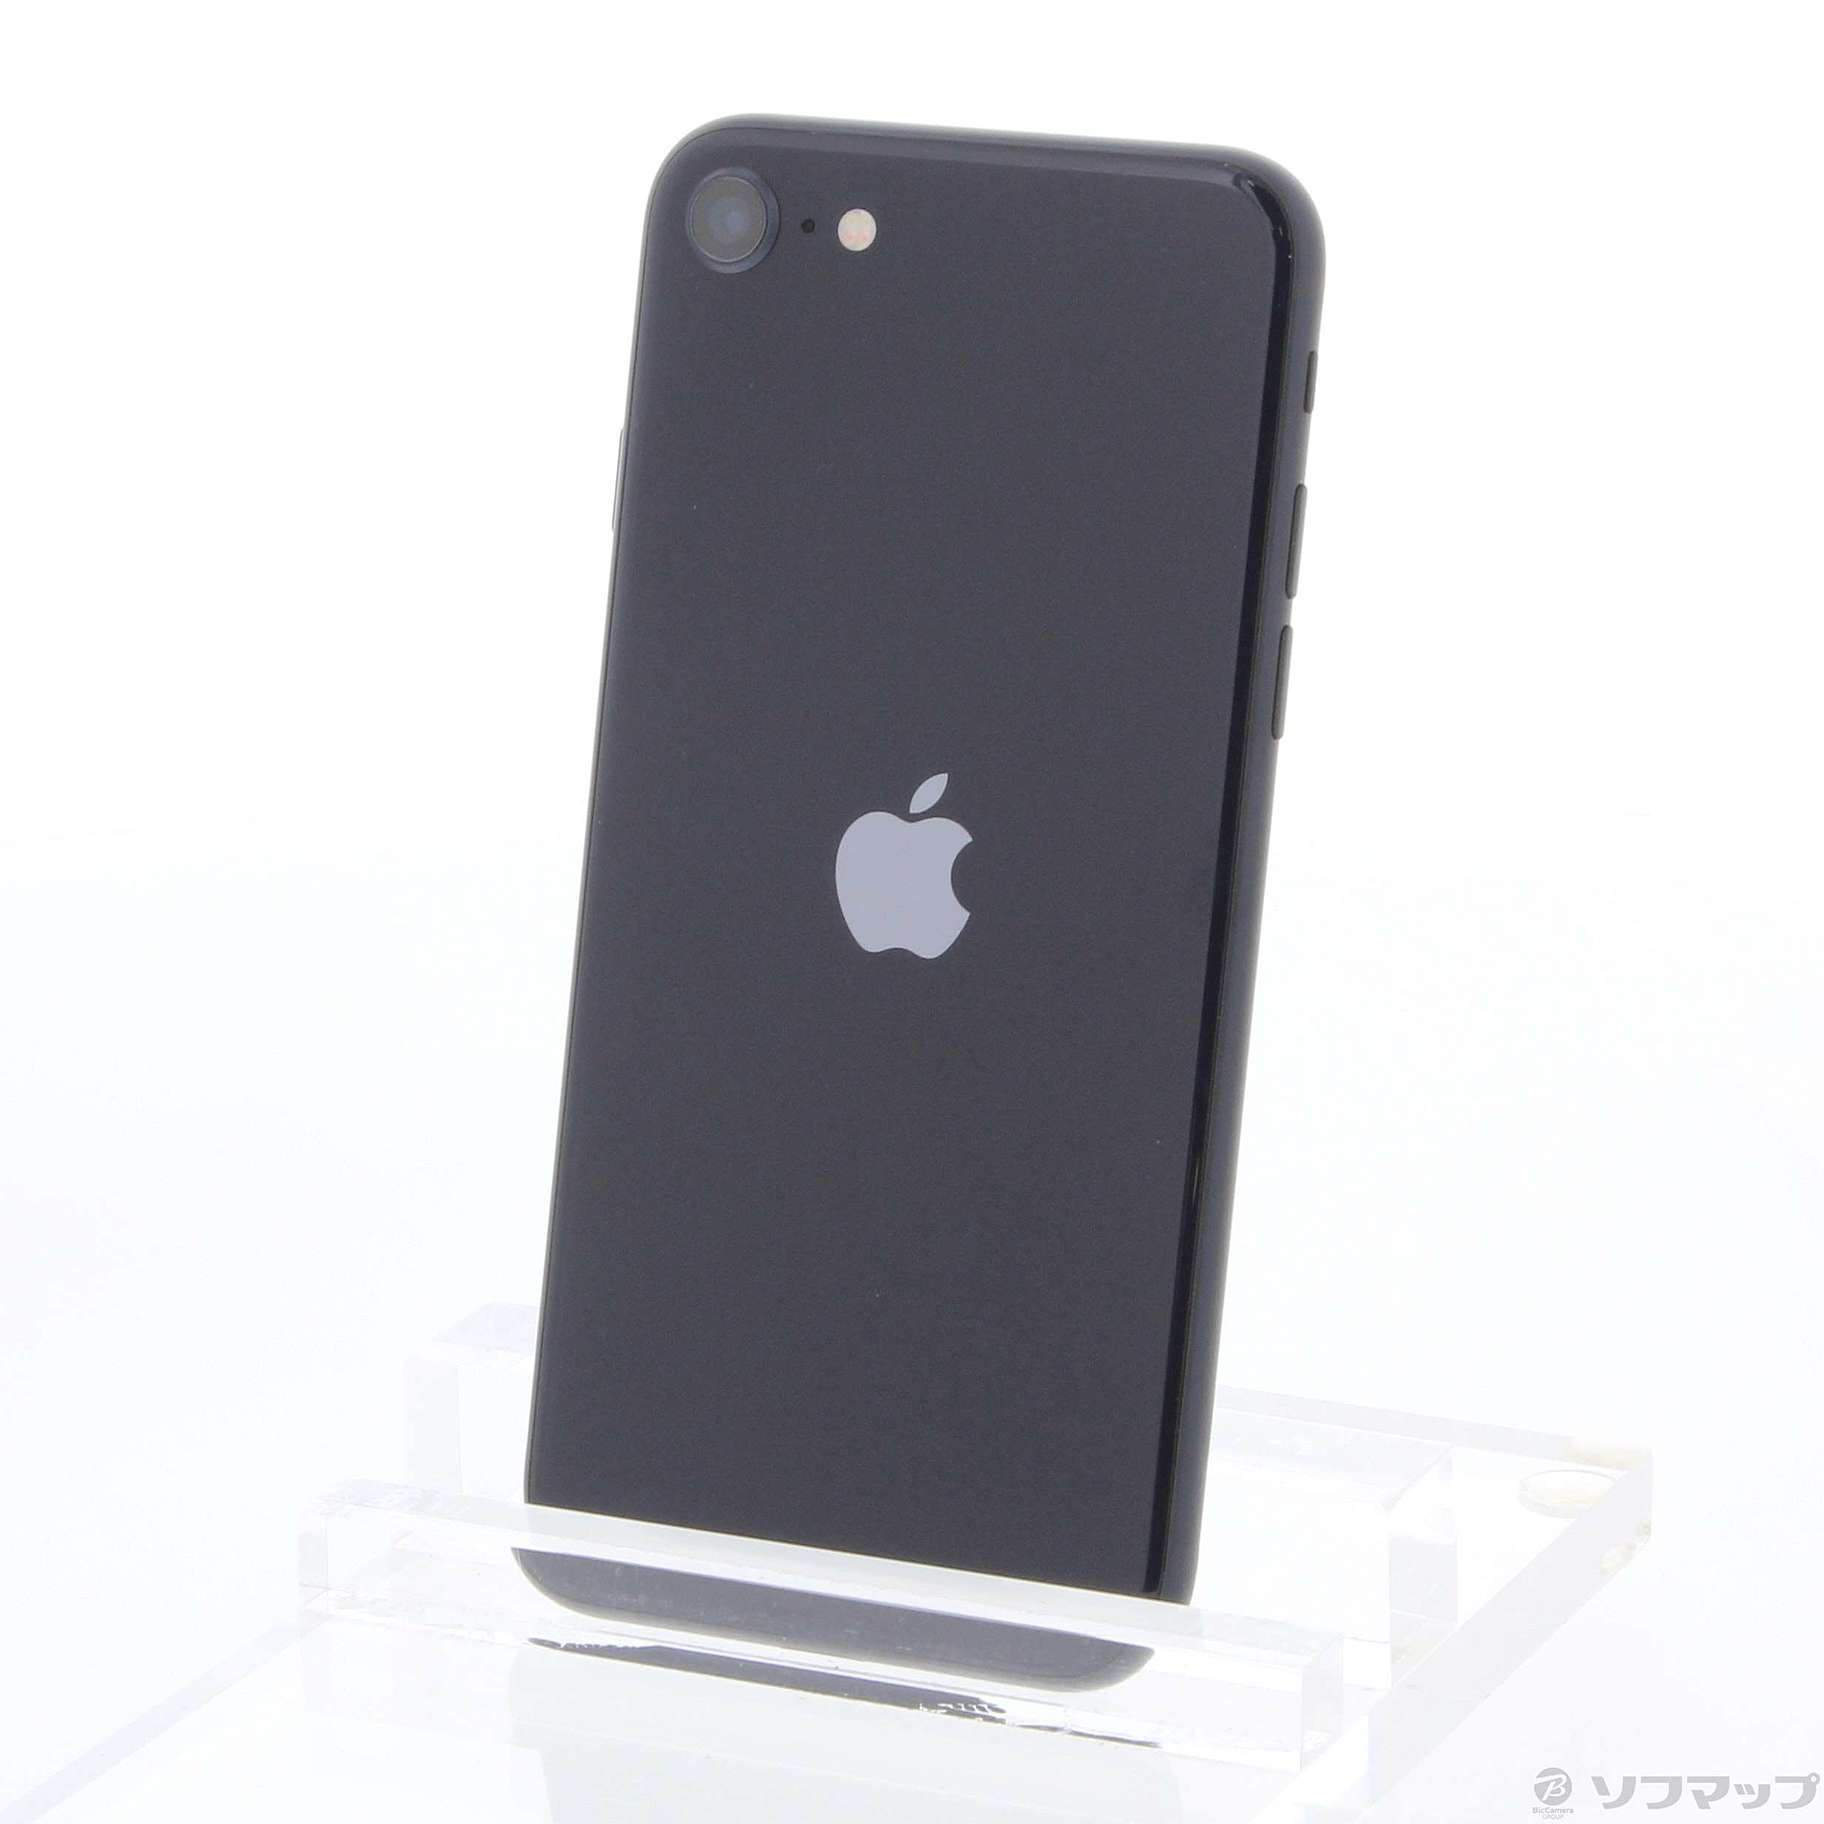 iPhone SE (第3世代) ミッドナイト 64GB SIMフリーApple